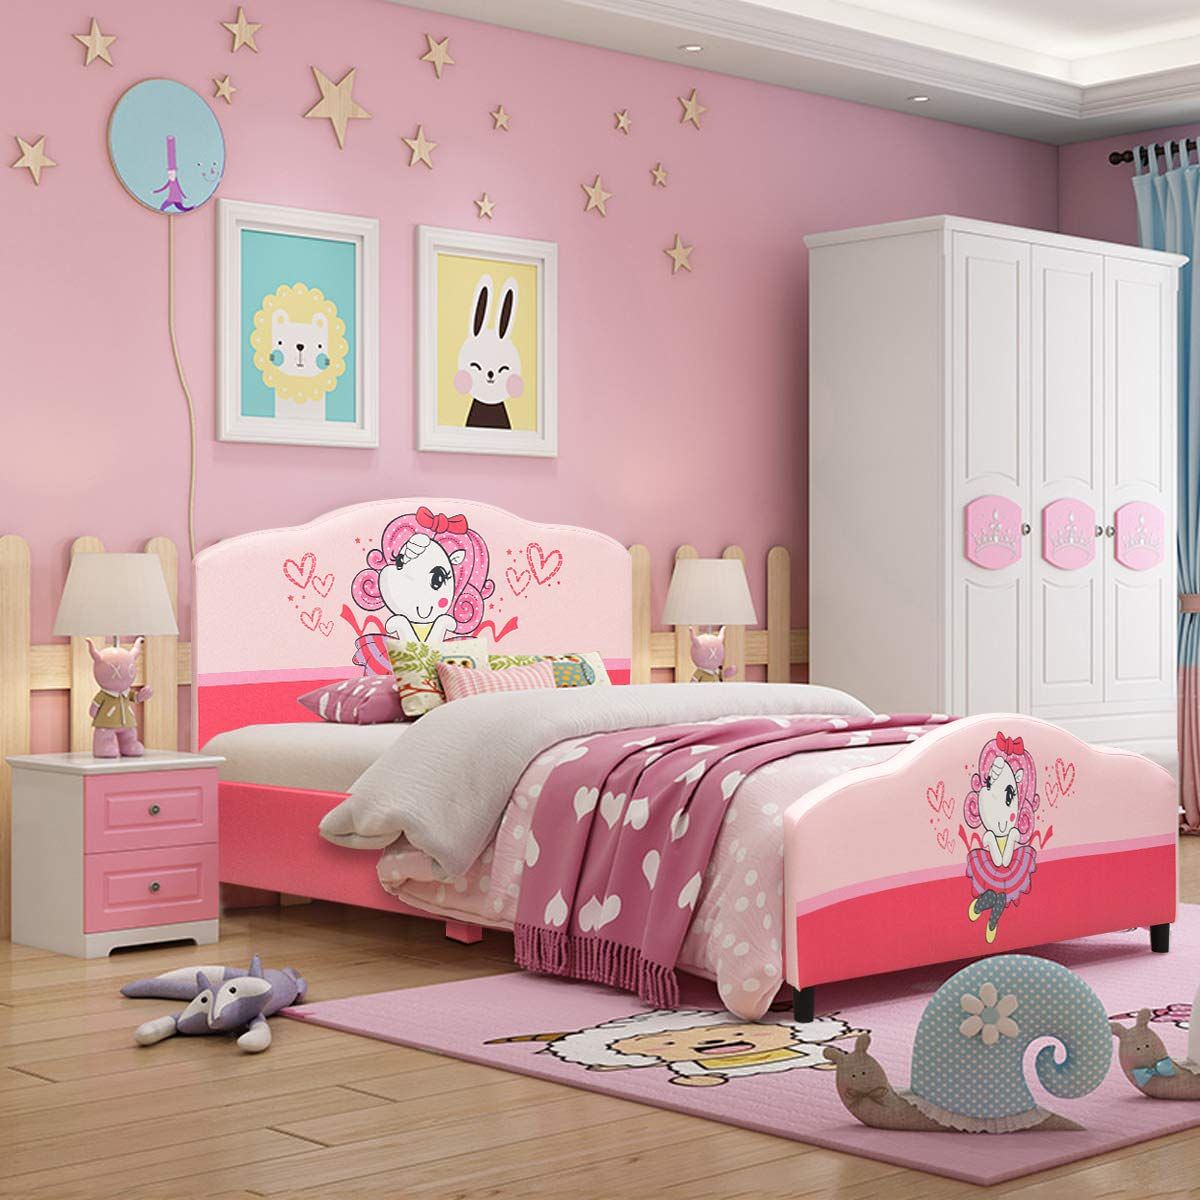 Phòng ngủ màu hồng được trang trí dễ thương